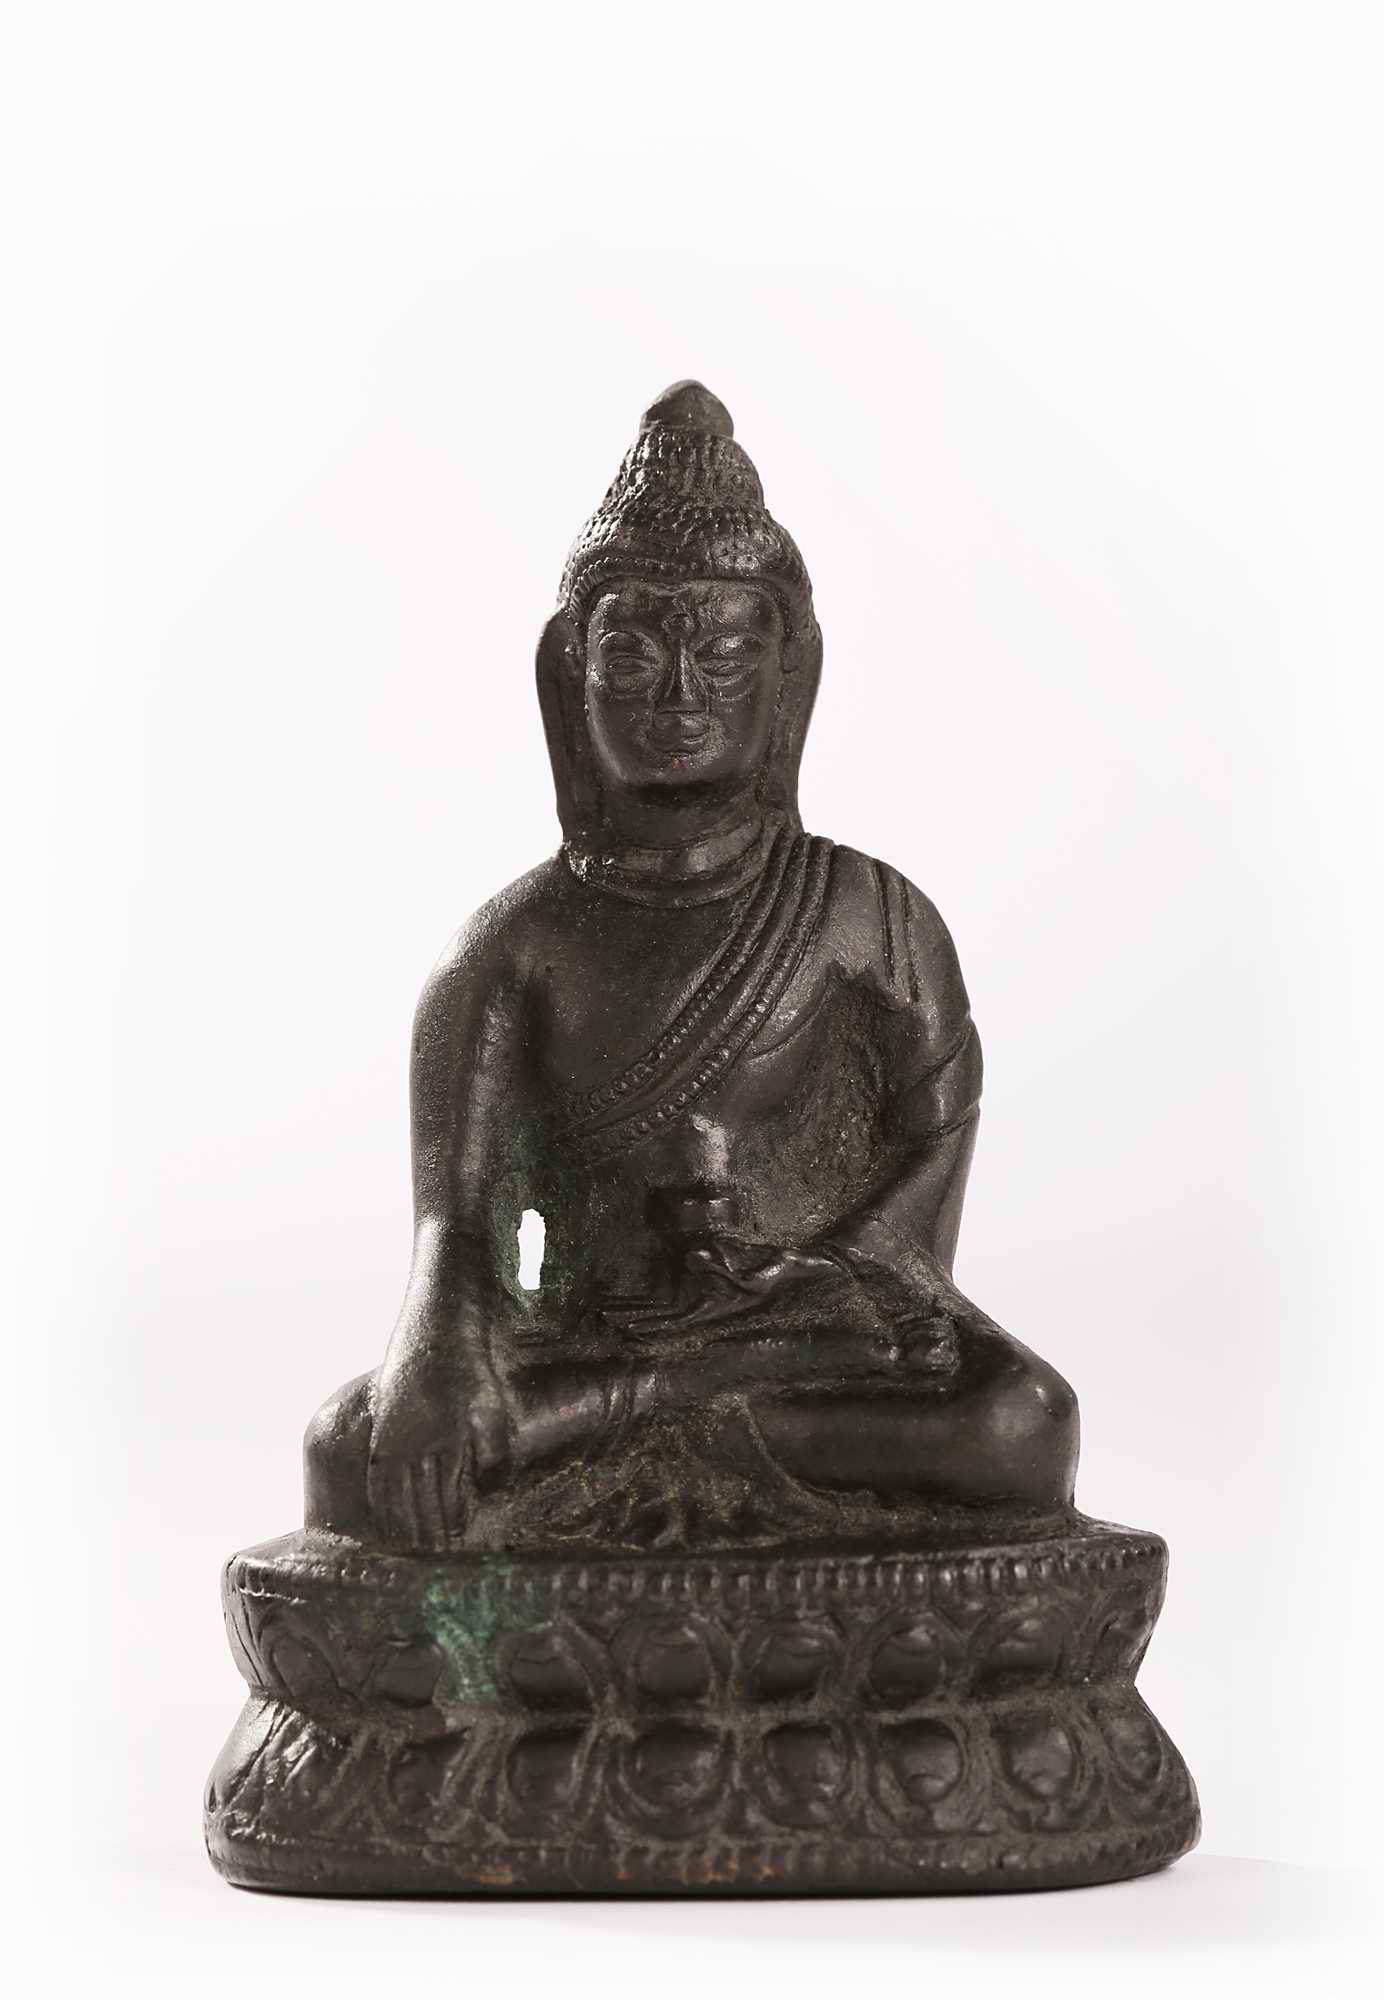 装裱形式：西藏 14-15世纪释迦牟尼